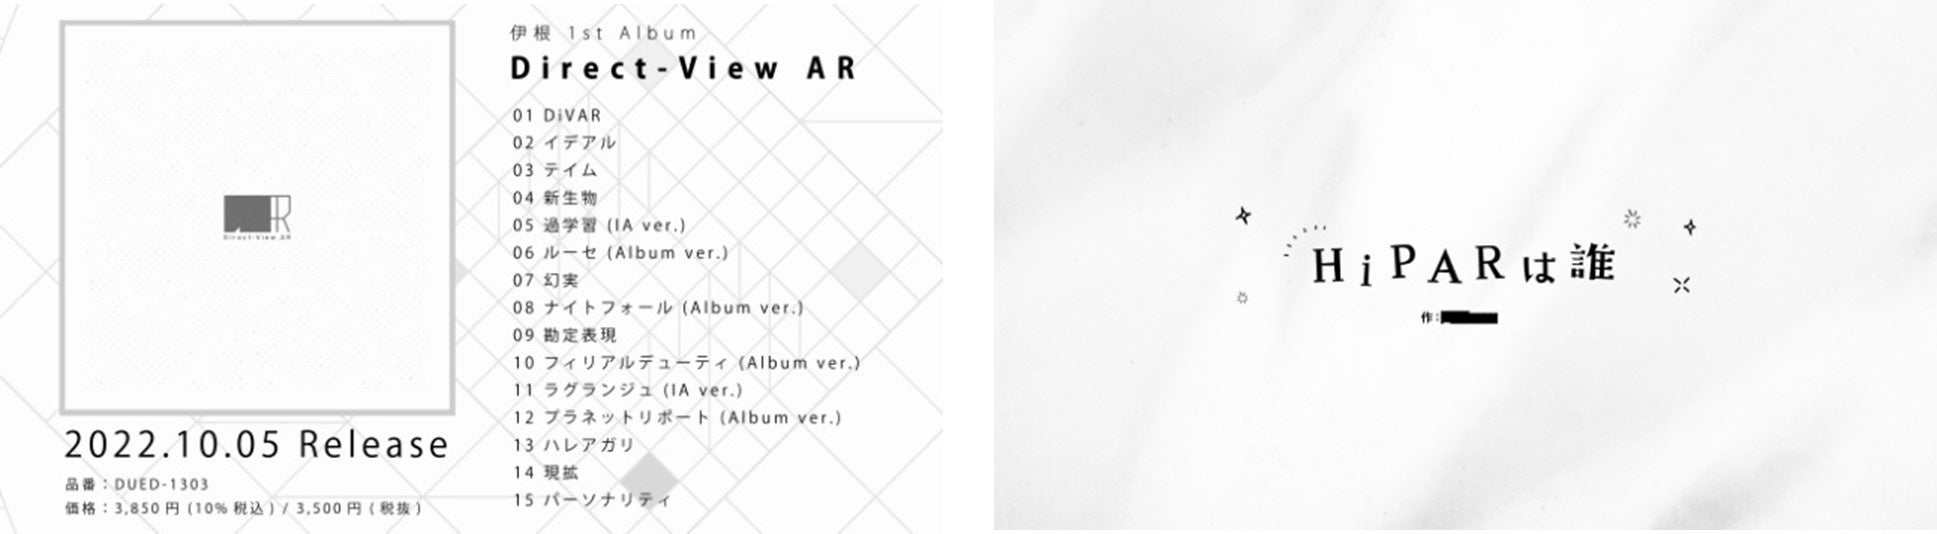 人気ボカロP・伊根の1stアルバム『Direct-View AR』収録曲と同梱小説のタイトルが決定 全曲試聴動画を公開！